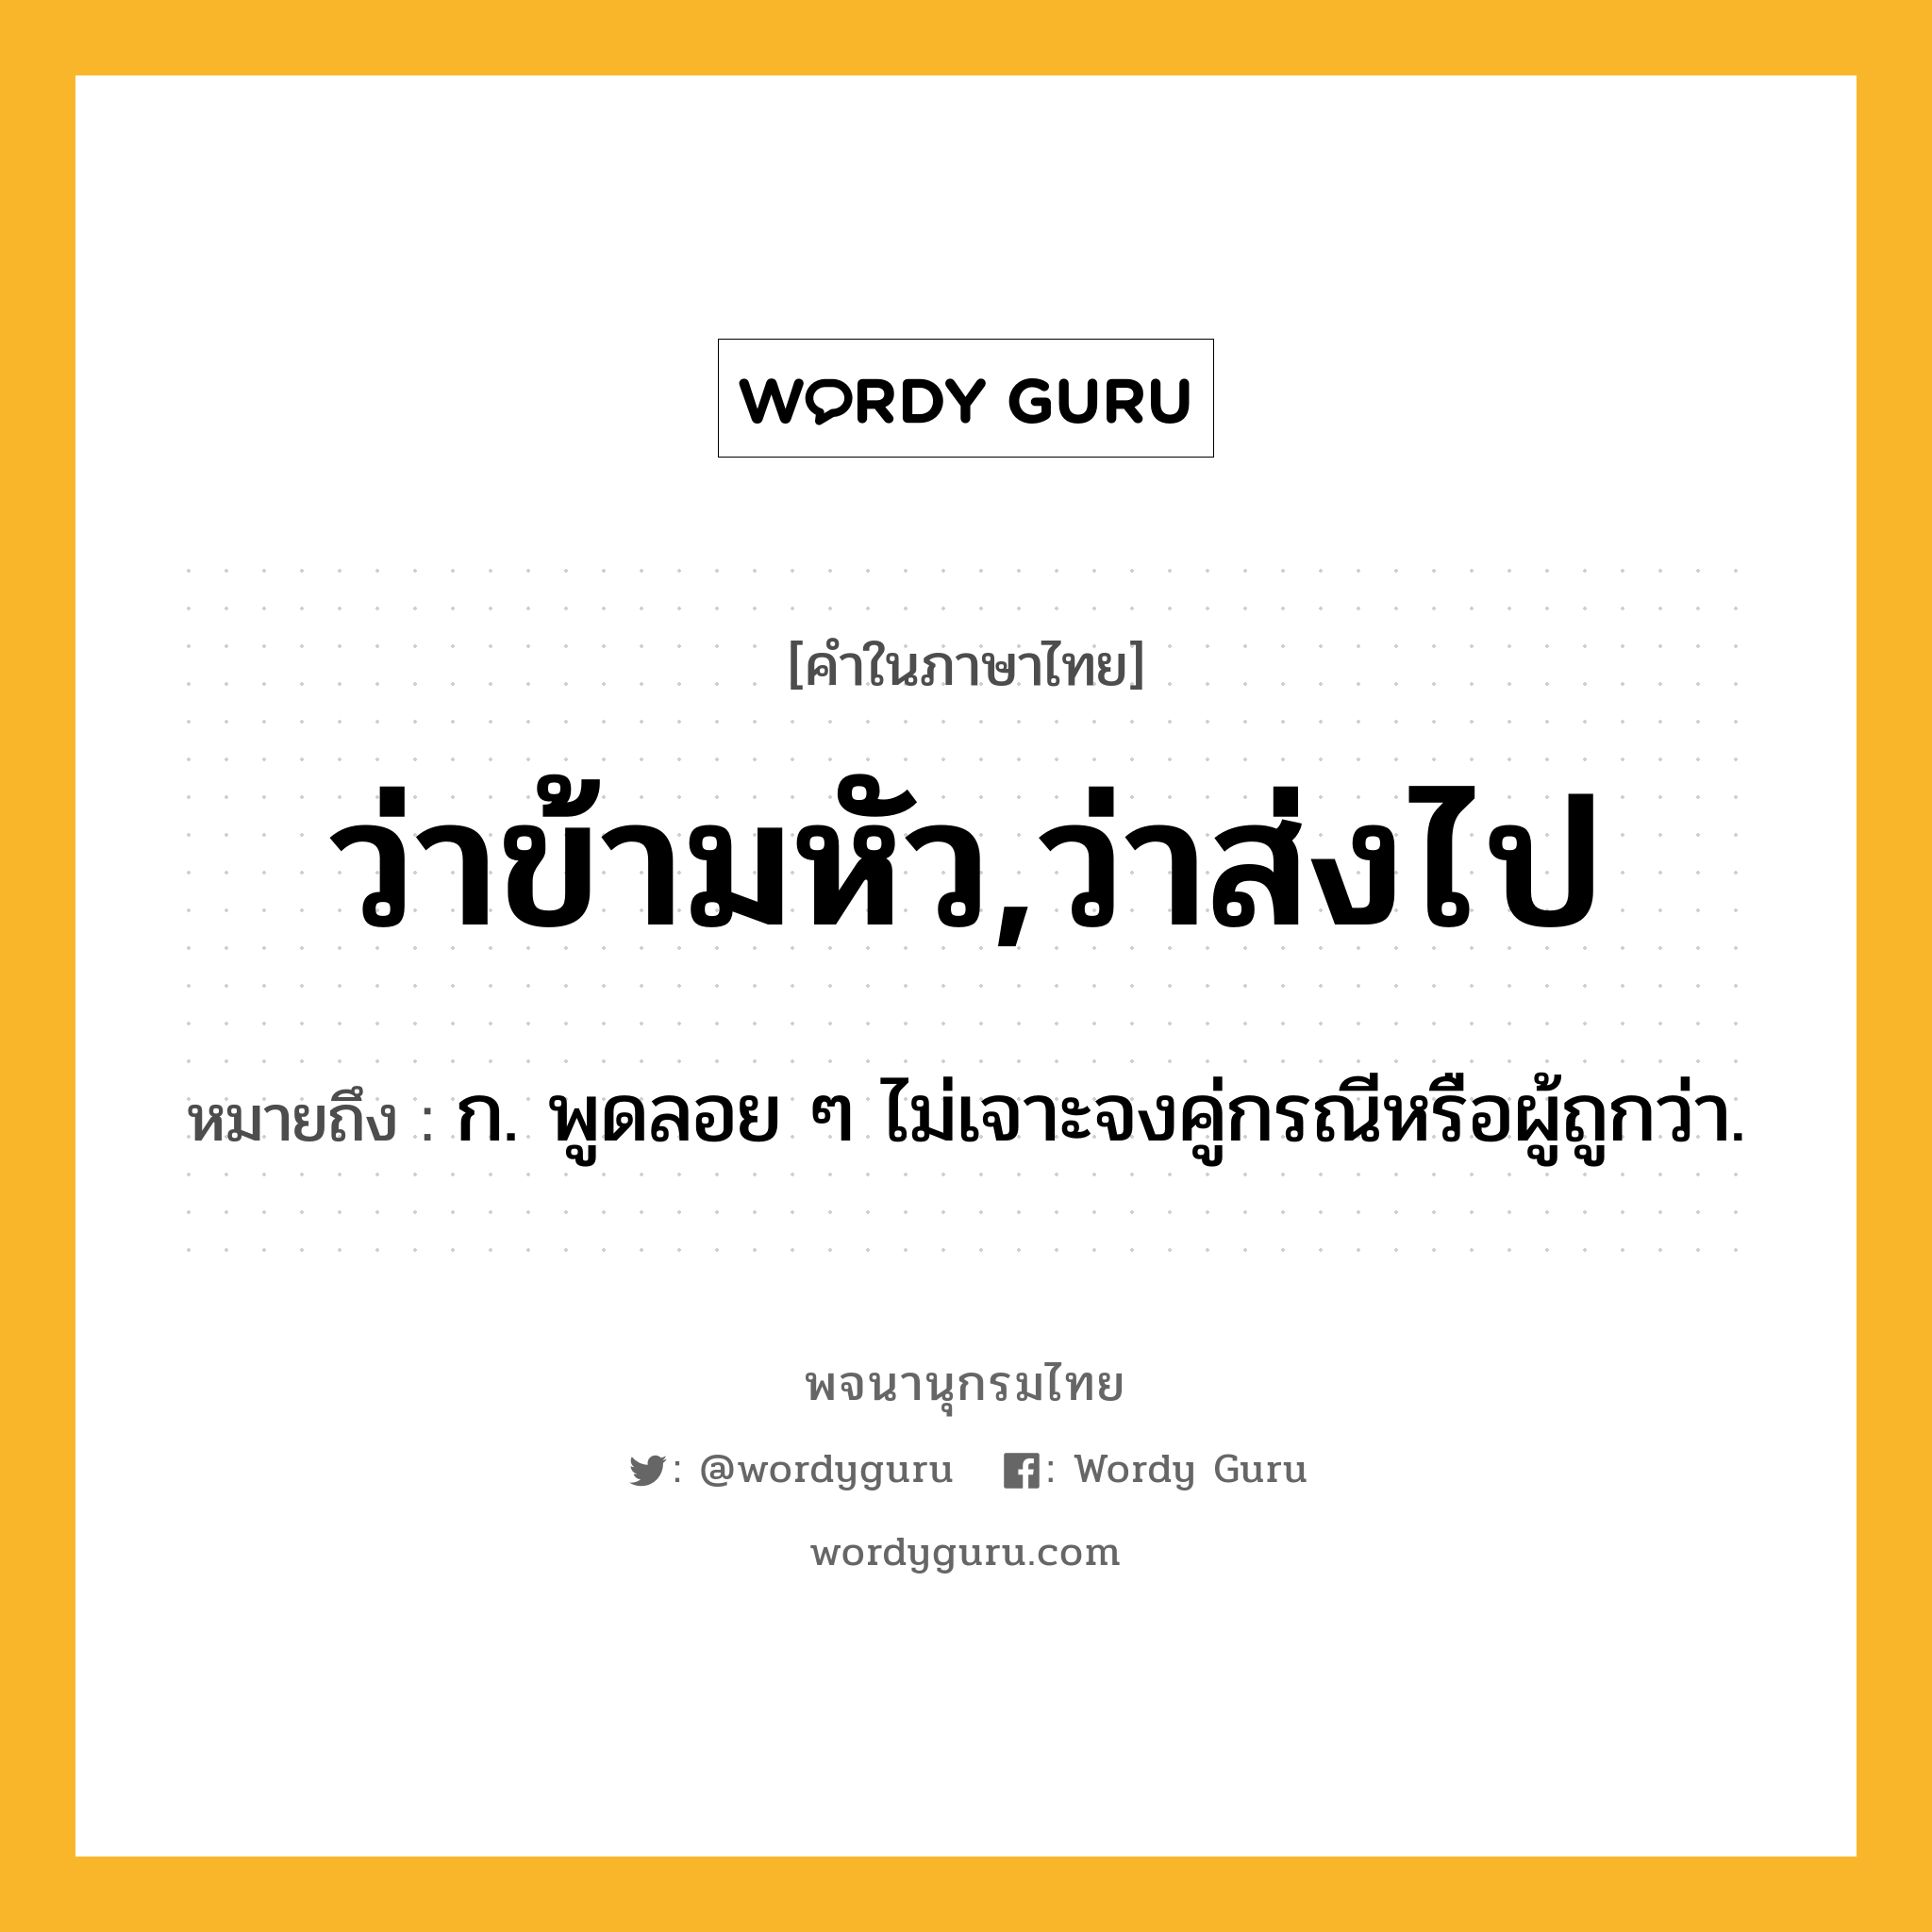 ว่าข้ามหัว,ว่าส่งไป ความหมาย หมายถึงอะไร?, คำในภาษาไทย ว่าข้ามหัว,ว่าส่งไป หมายถึง ก. พูดลอย ๆ ไม่เจาะจงคู่กรณีหรือผู้ถูกว่า.